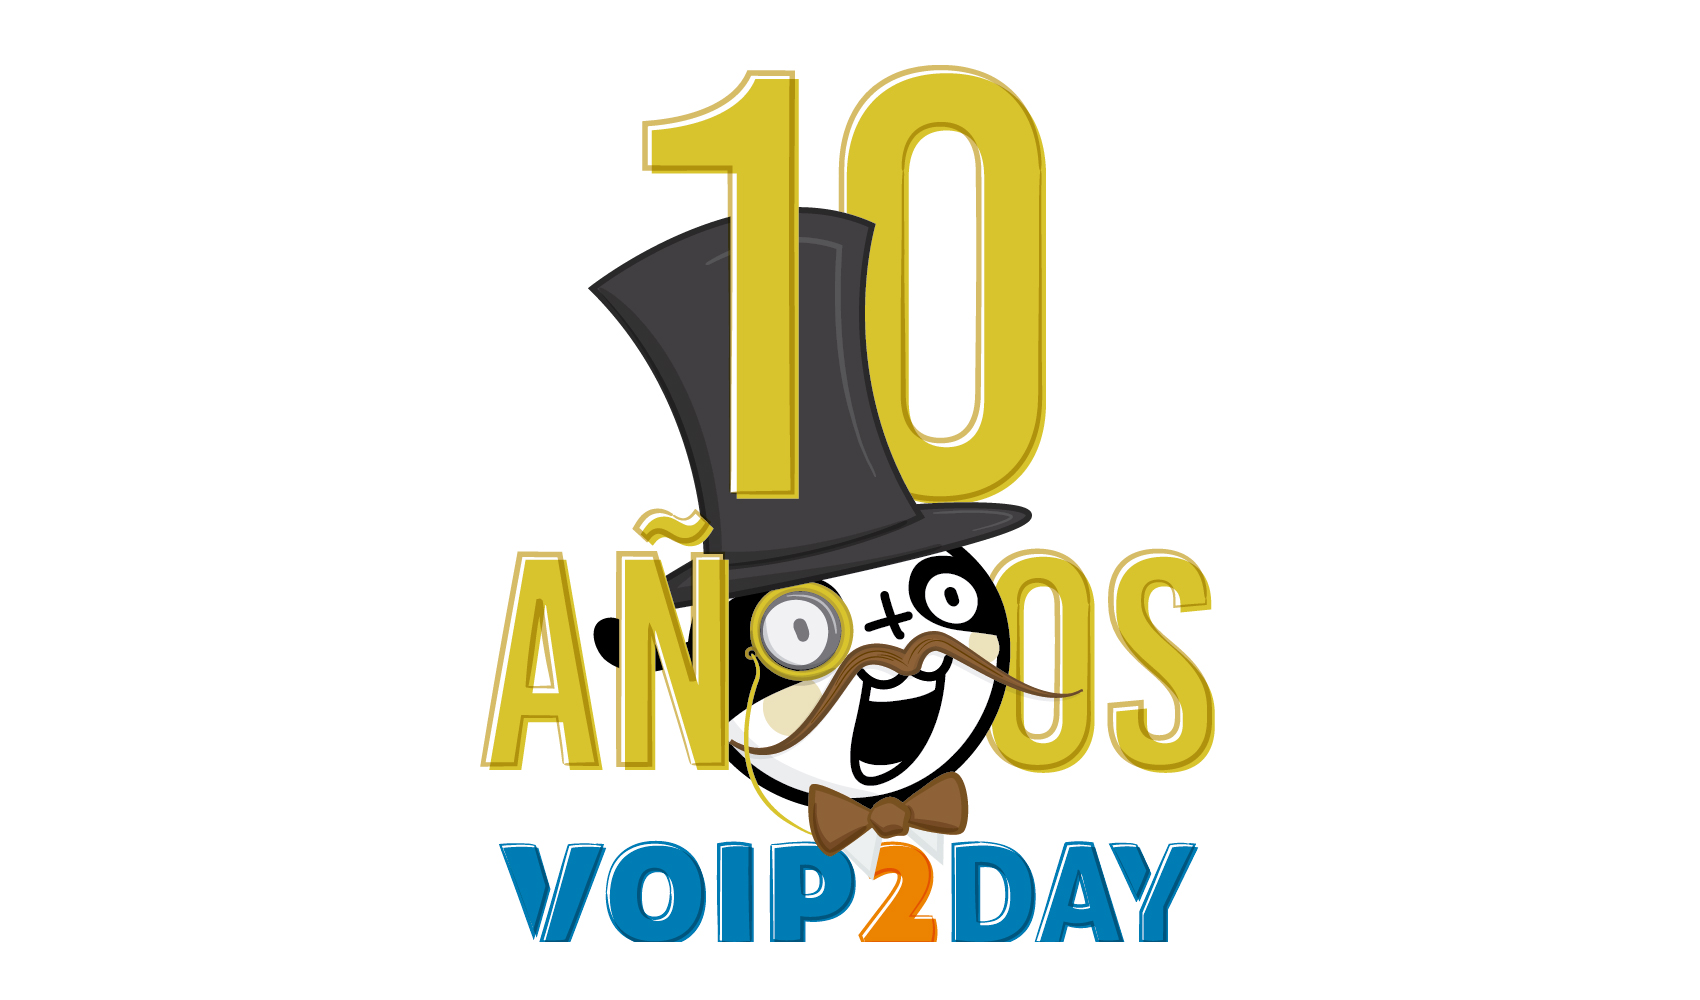 La 10 edicin de VoIP2DAY cambia de ubicacion en su dcimo aniversario, pasando del Santiago Bernabeu al nuevo estadio Wanda Metropolitano...